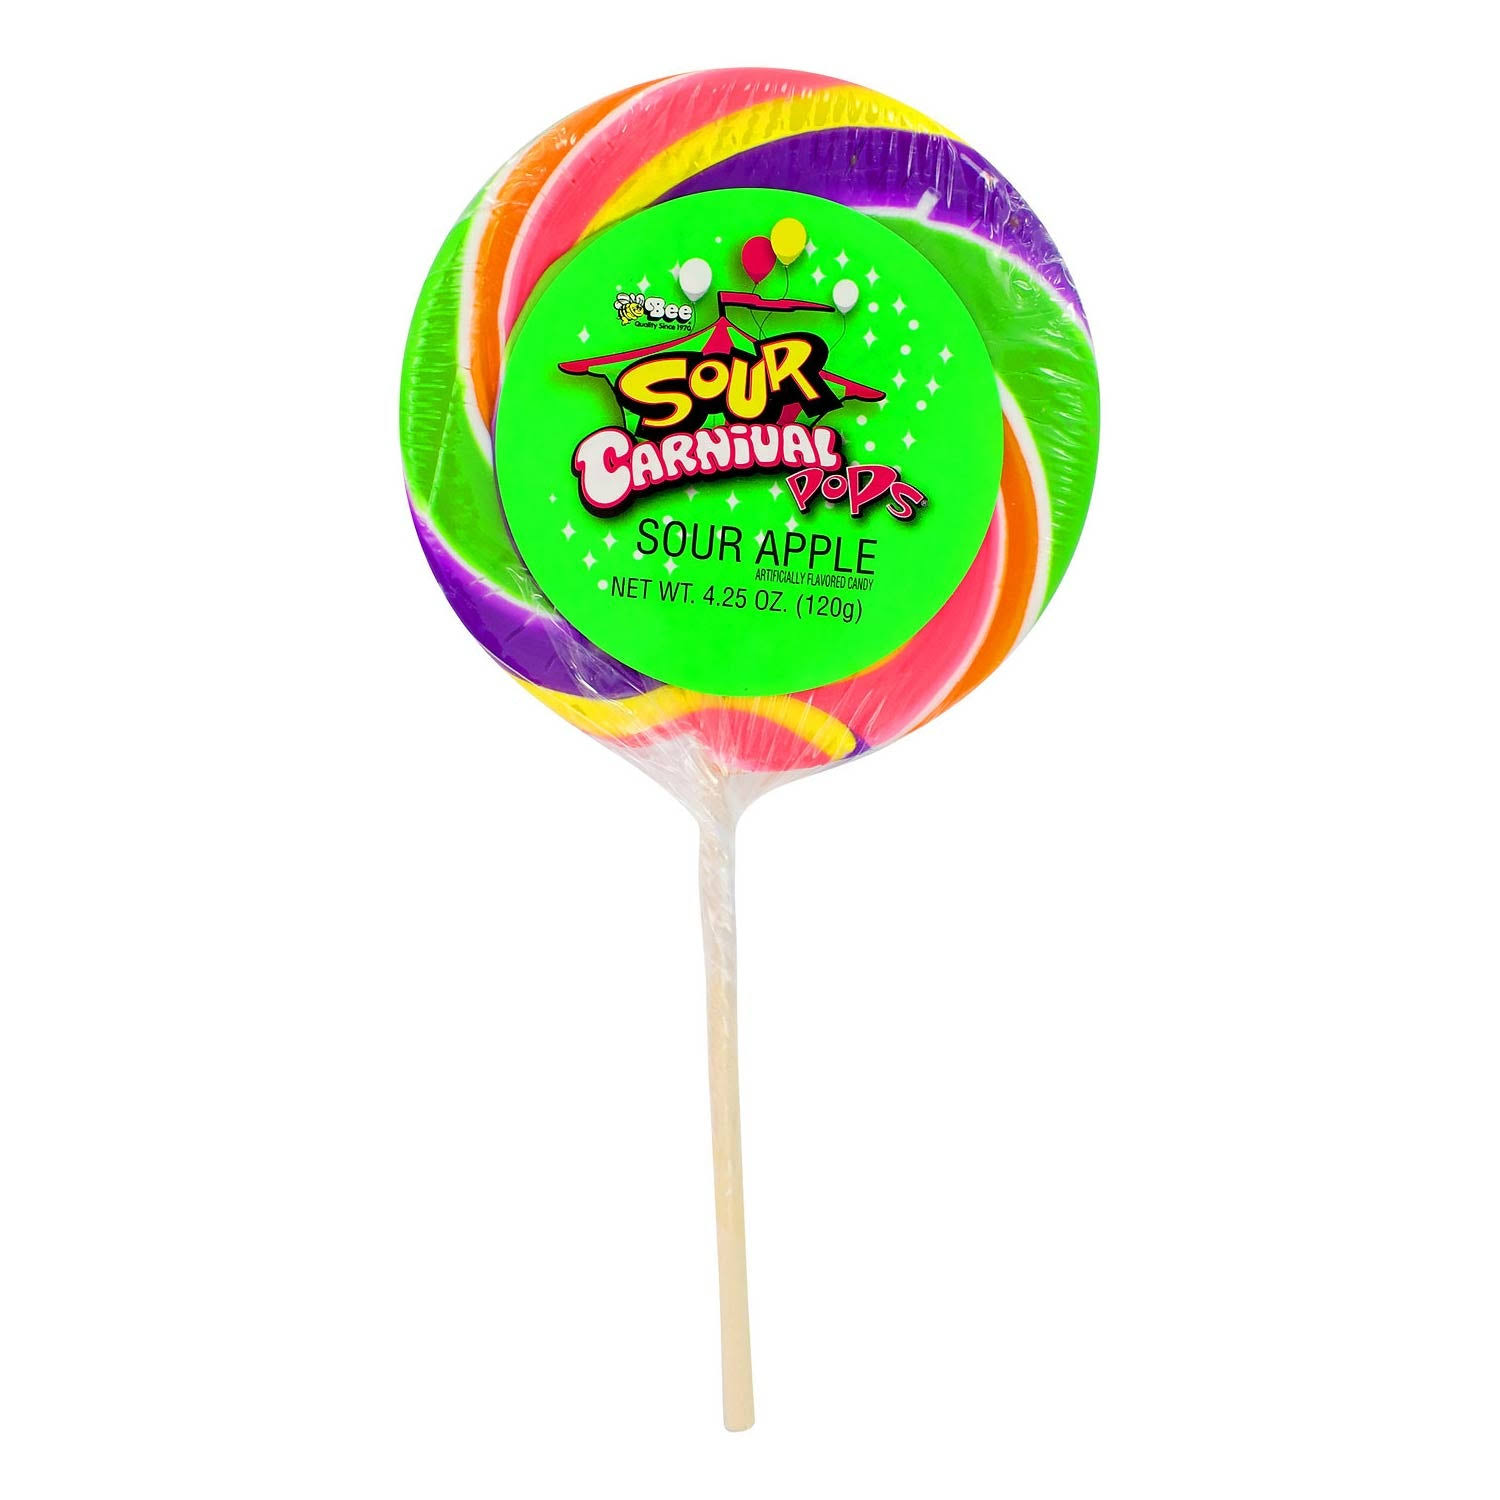 Giant Sour Apple Carnival Swirl Lollipops 4.25 oz. (120g) (Pack Of 2)